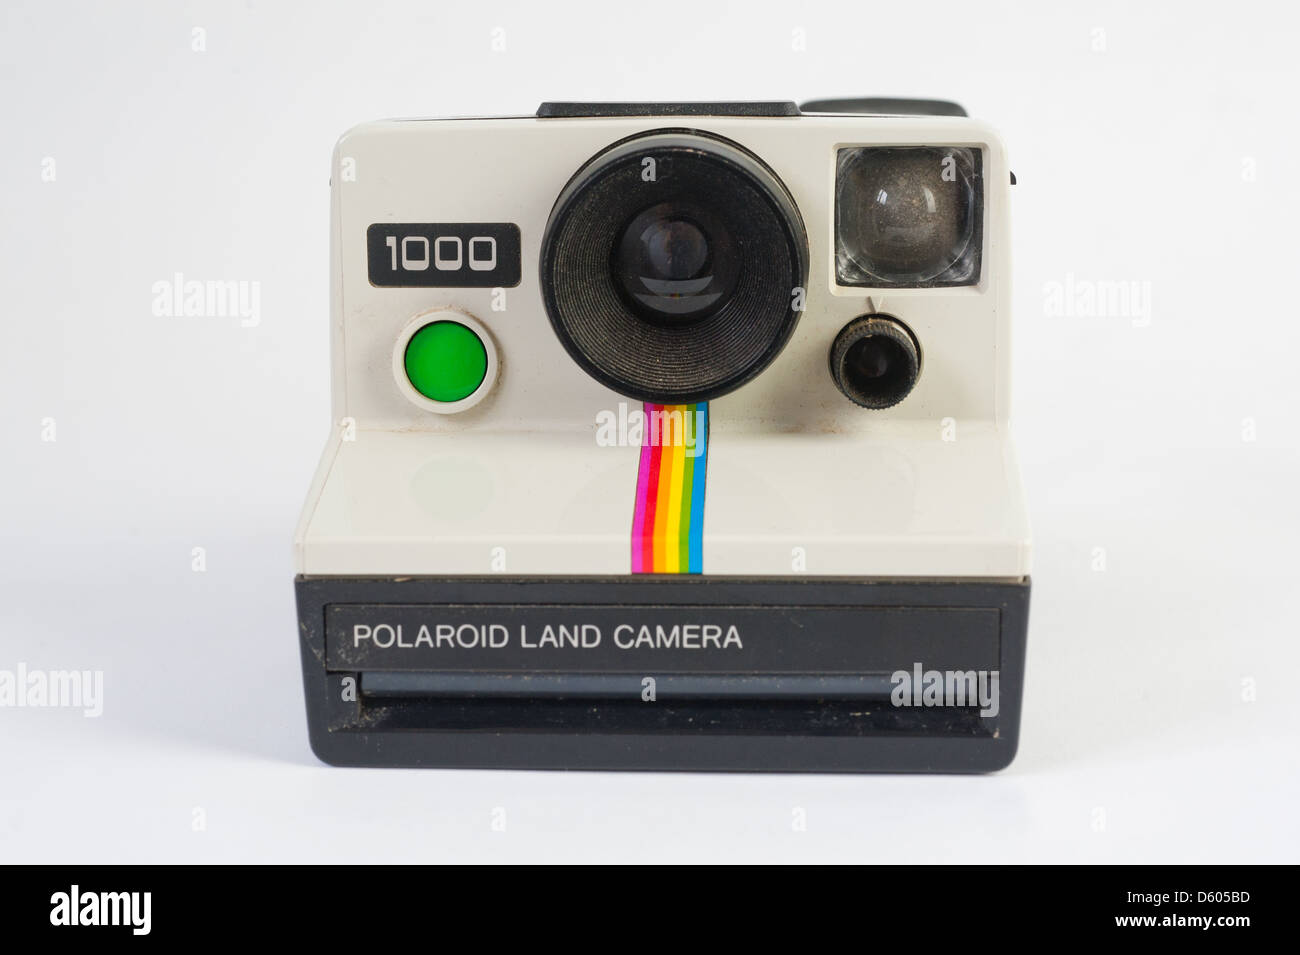 Articoli fotografici e video vintage Polaroid 1000 LAND CAMERA  immediatamente immagine Fotocamera con Flash ettason.com